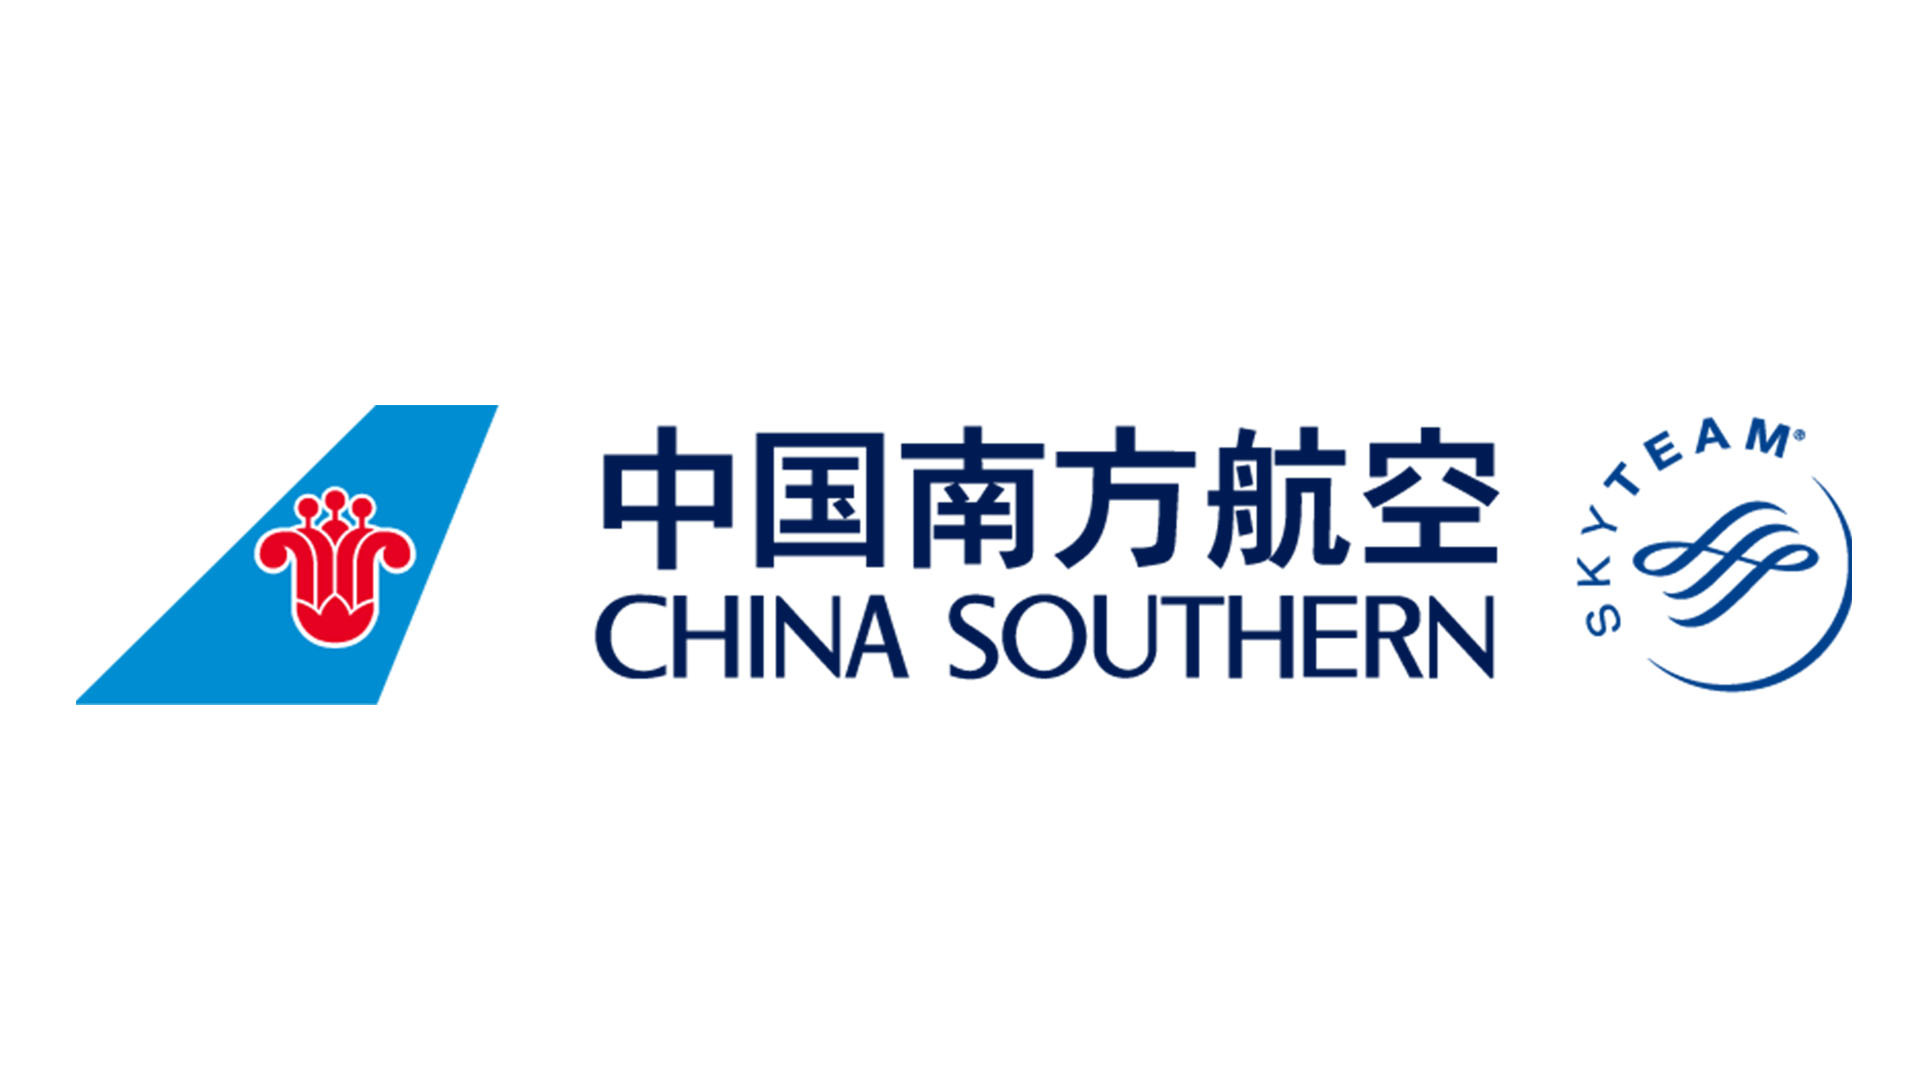 China Southern Airlines Logo Vector Png Hdpng.com 1920 - China Southern Airlines Vector, Transparent background PNG HD thumbnail